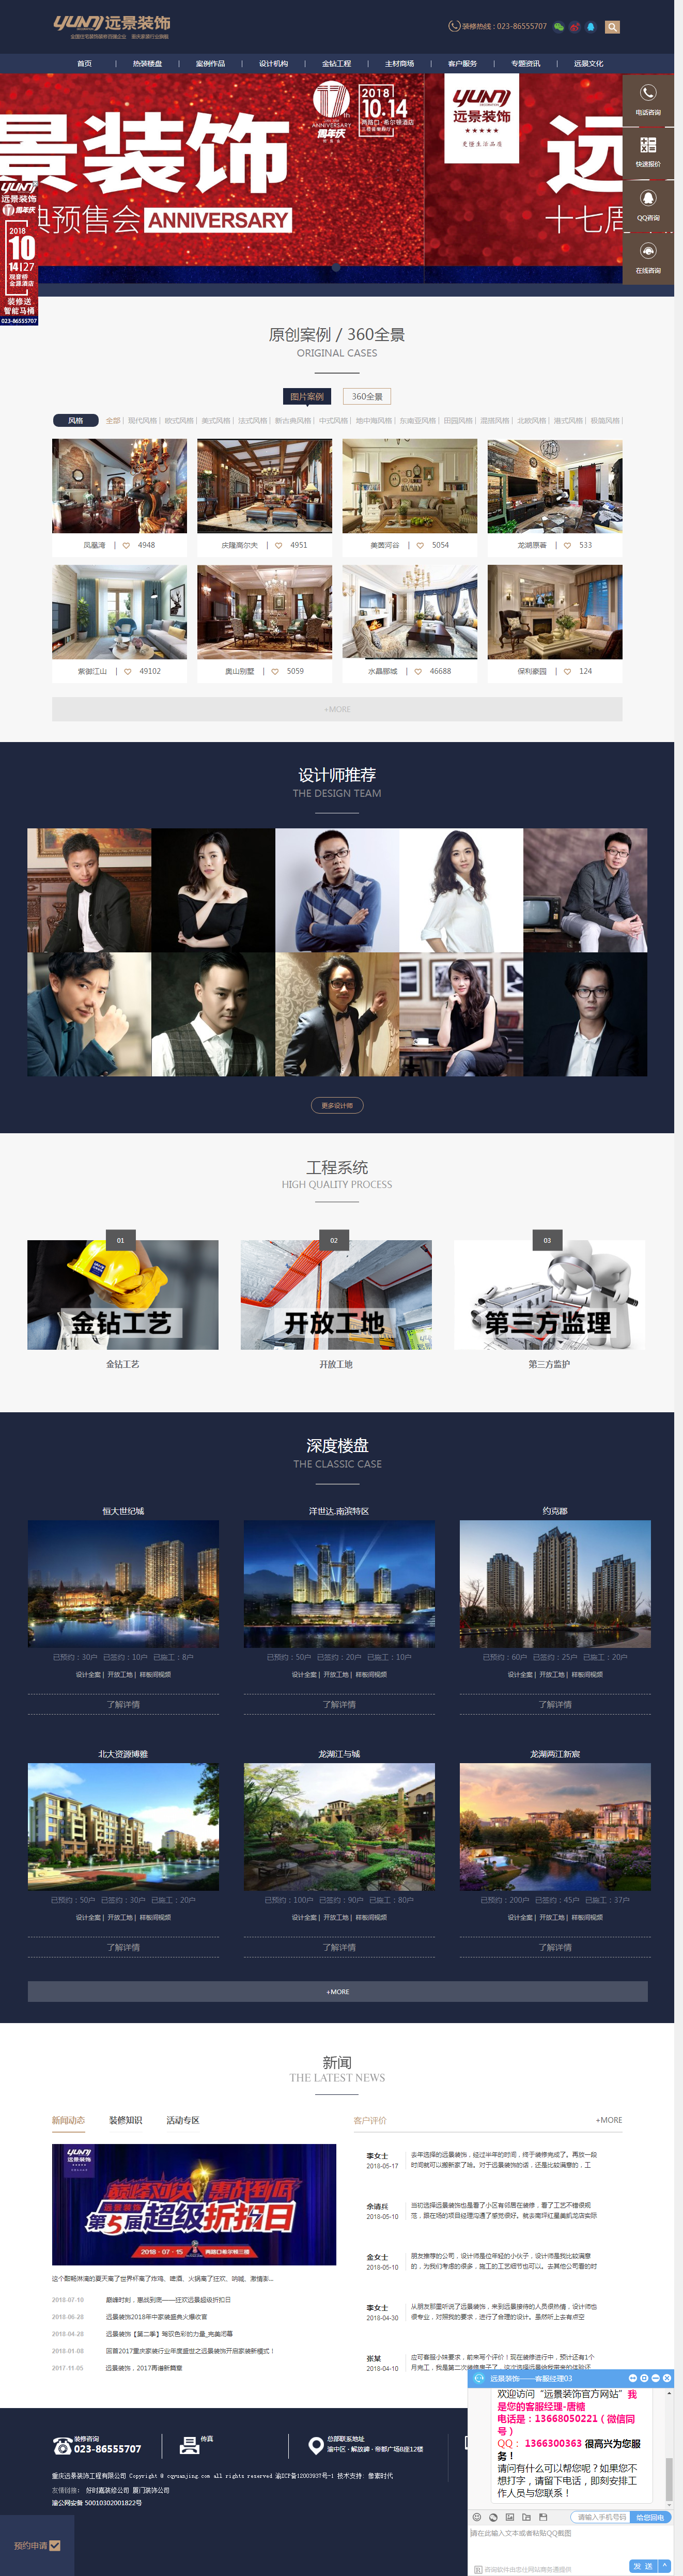 重庆远景装饰工程有限公司首页效果图